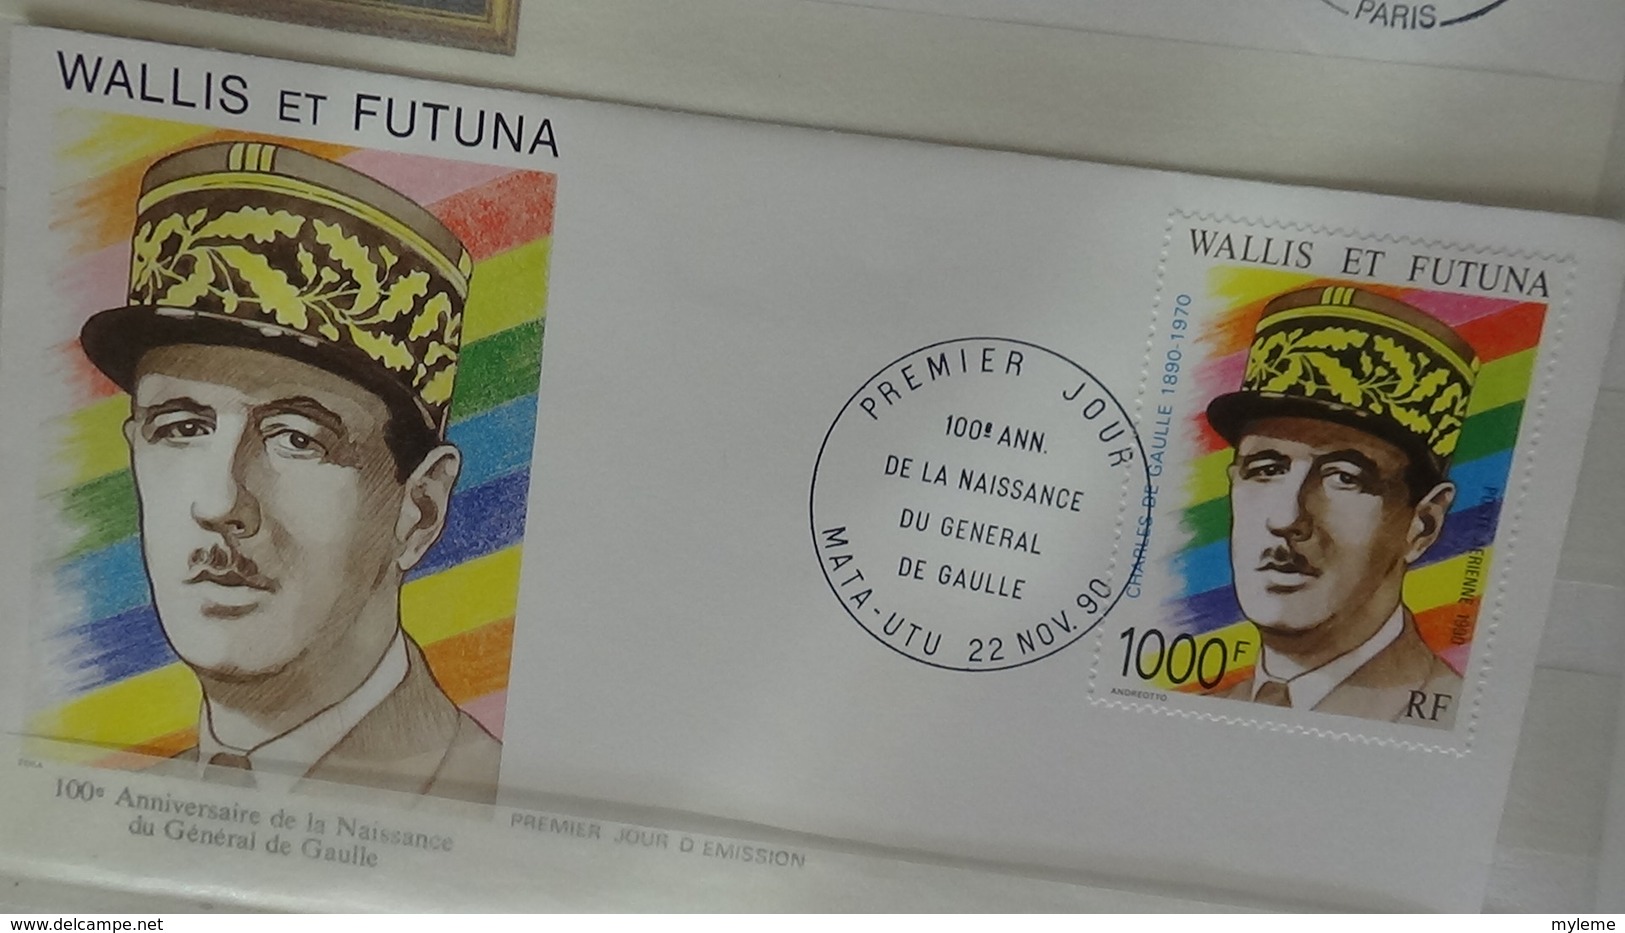 Belle thématique sur le Général De Gaulle, timbres (tous ** 1ère page), ND, blocs, enveloppes .... A saisir !!!